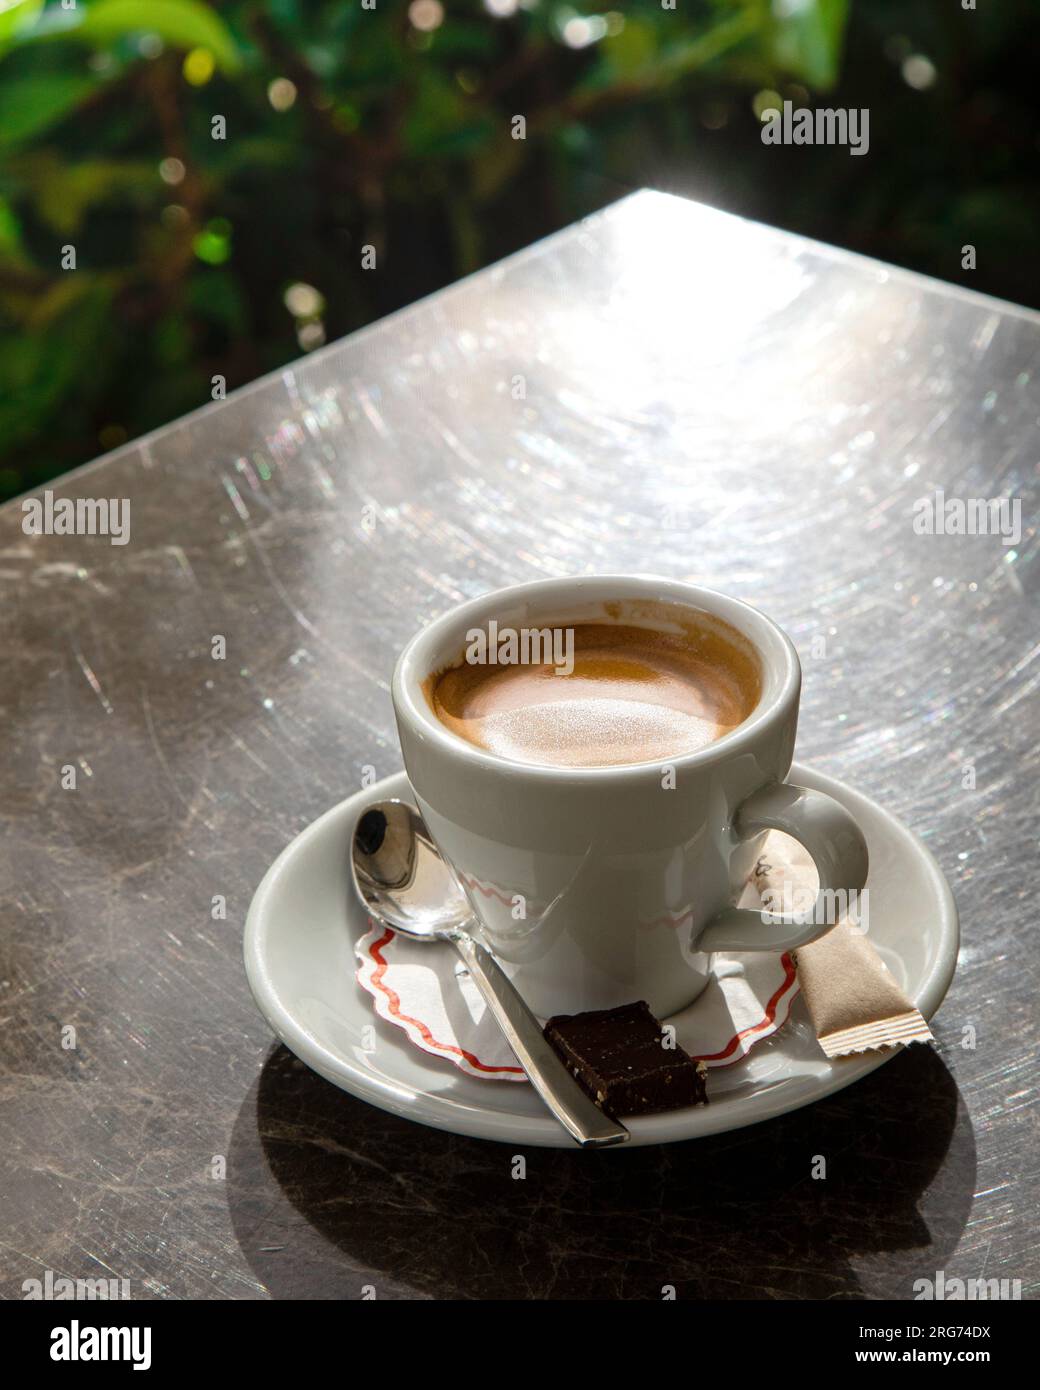 https://c8.alamy.com/comp/2RG74DX/fresh-tasty-espresso-cup-of-hot-coffee-2RG74DX.jpg